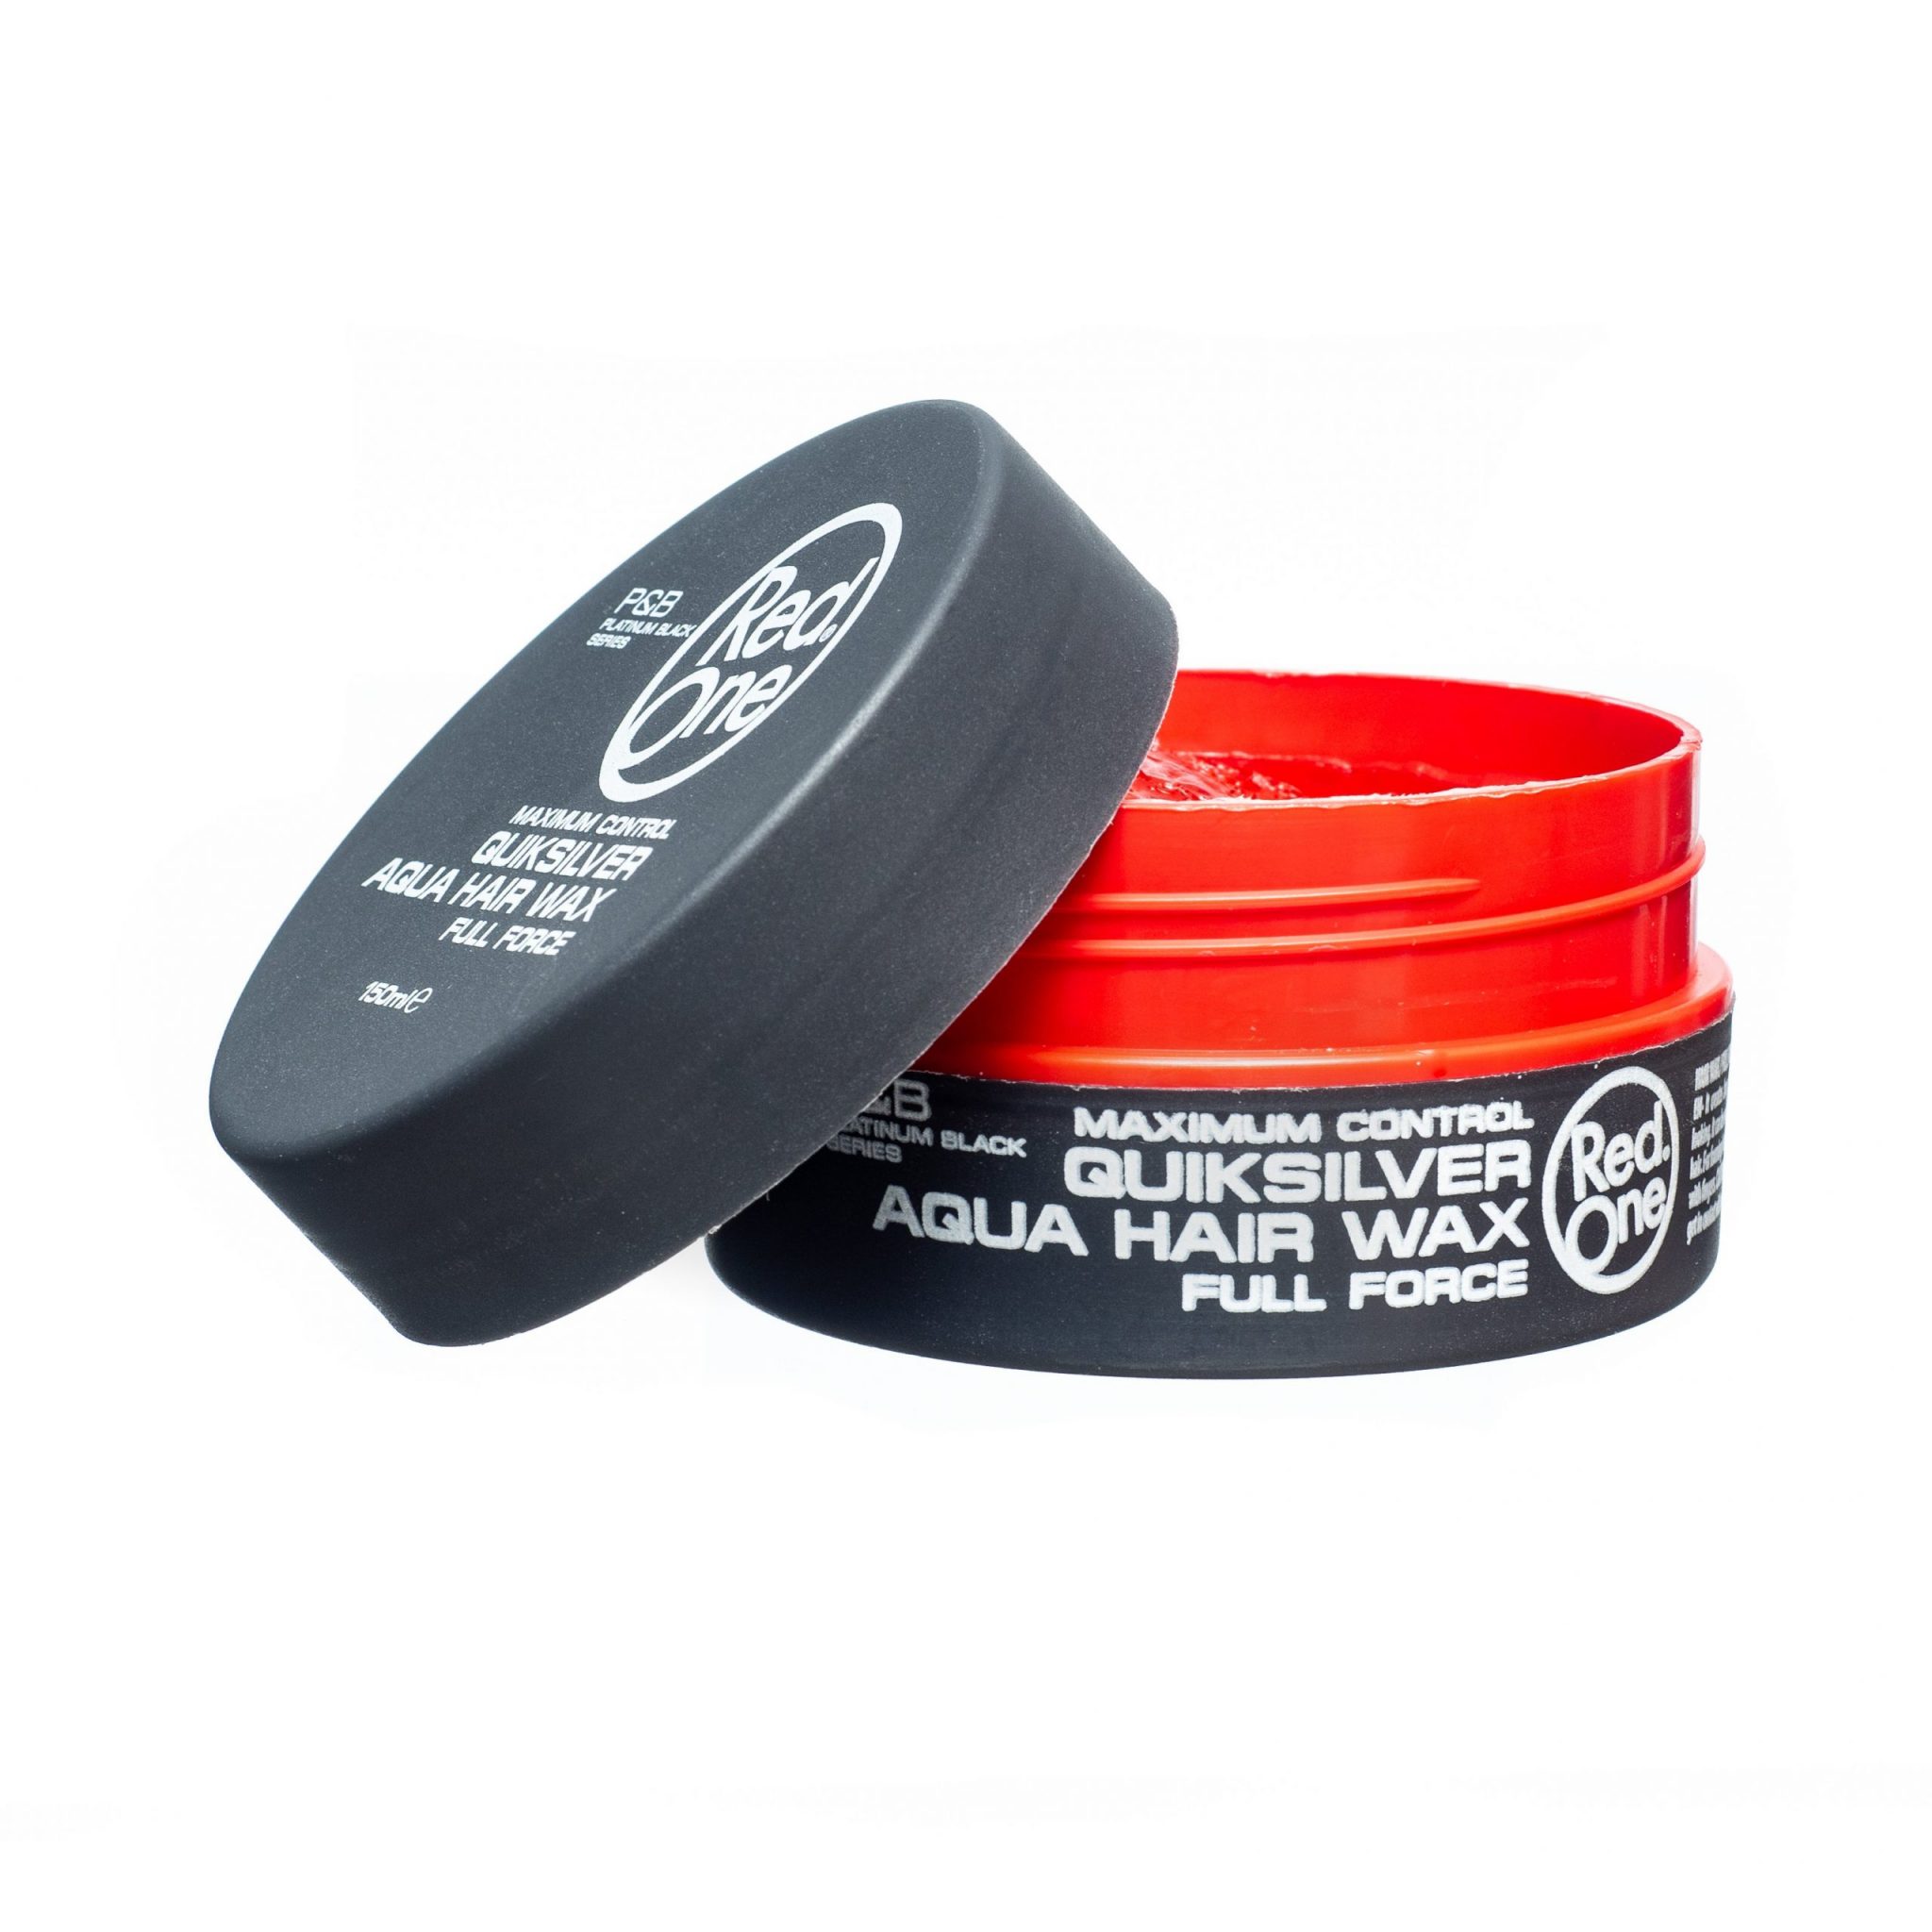 Cire coiffante Quiksilver Aqua Hair Wax - Red one ® 150 ml